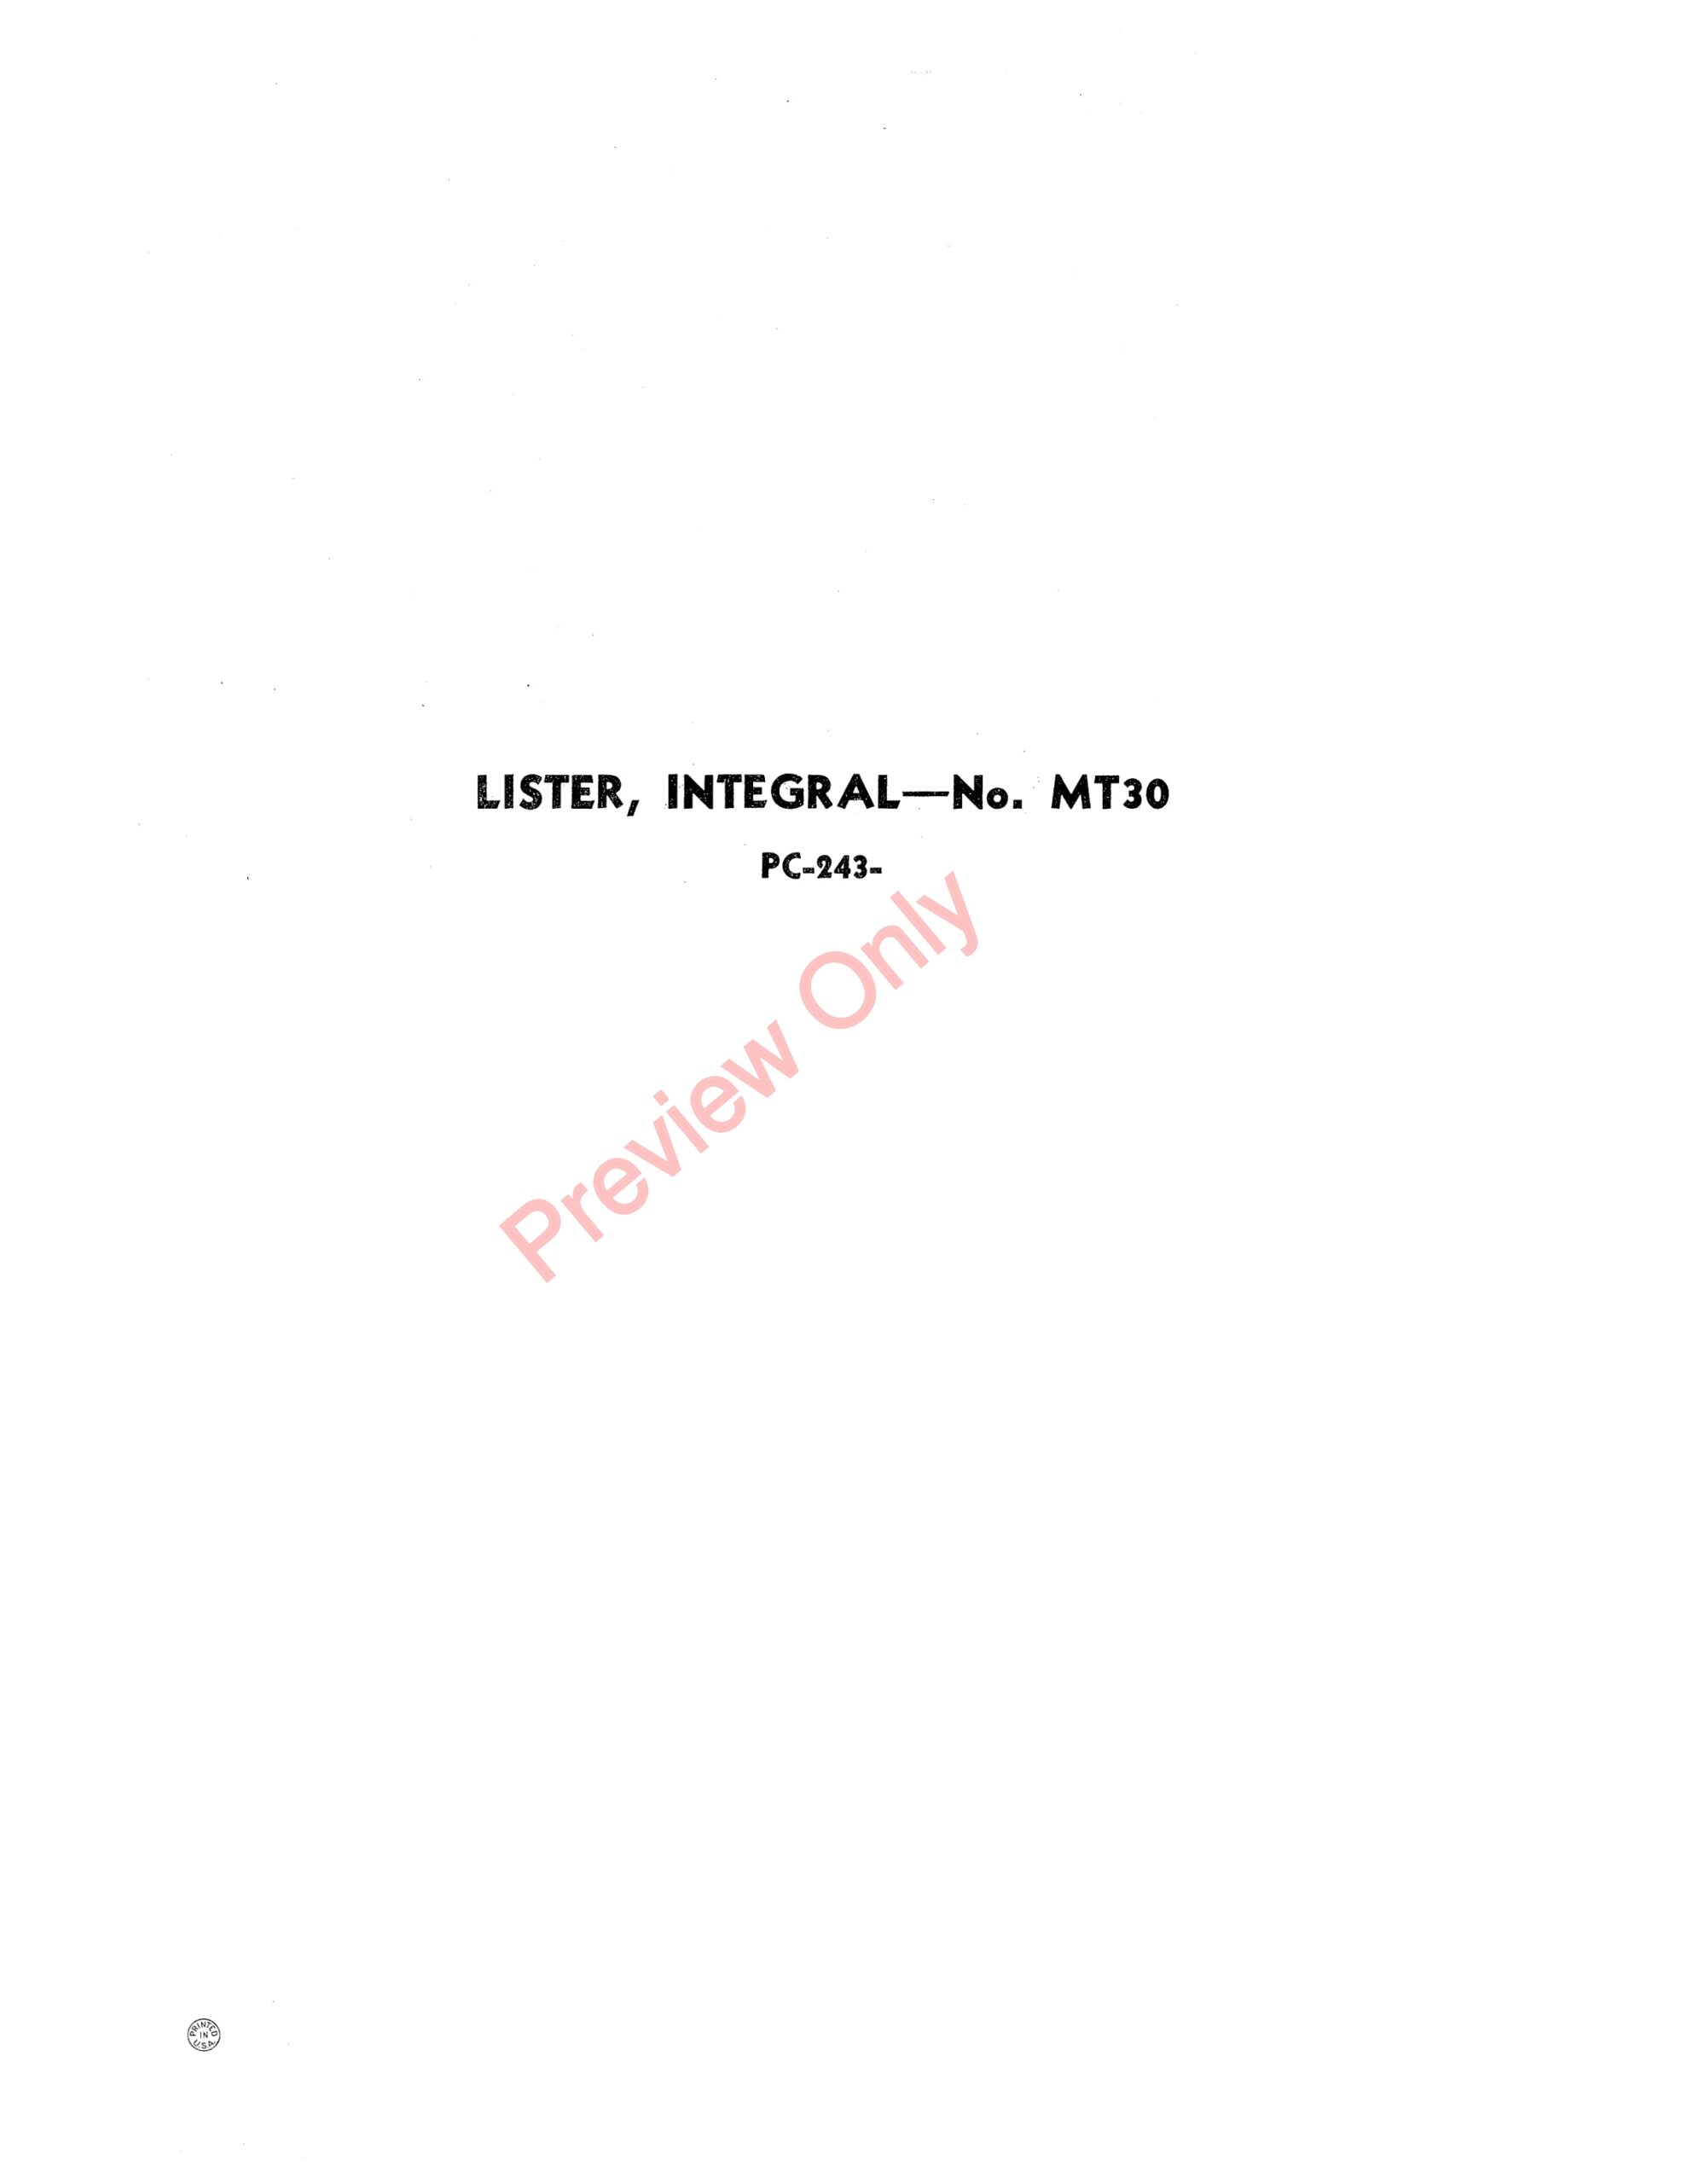 John Deere Integral Lister – No. MT30 Parts Catalog PC243 01APR52-1